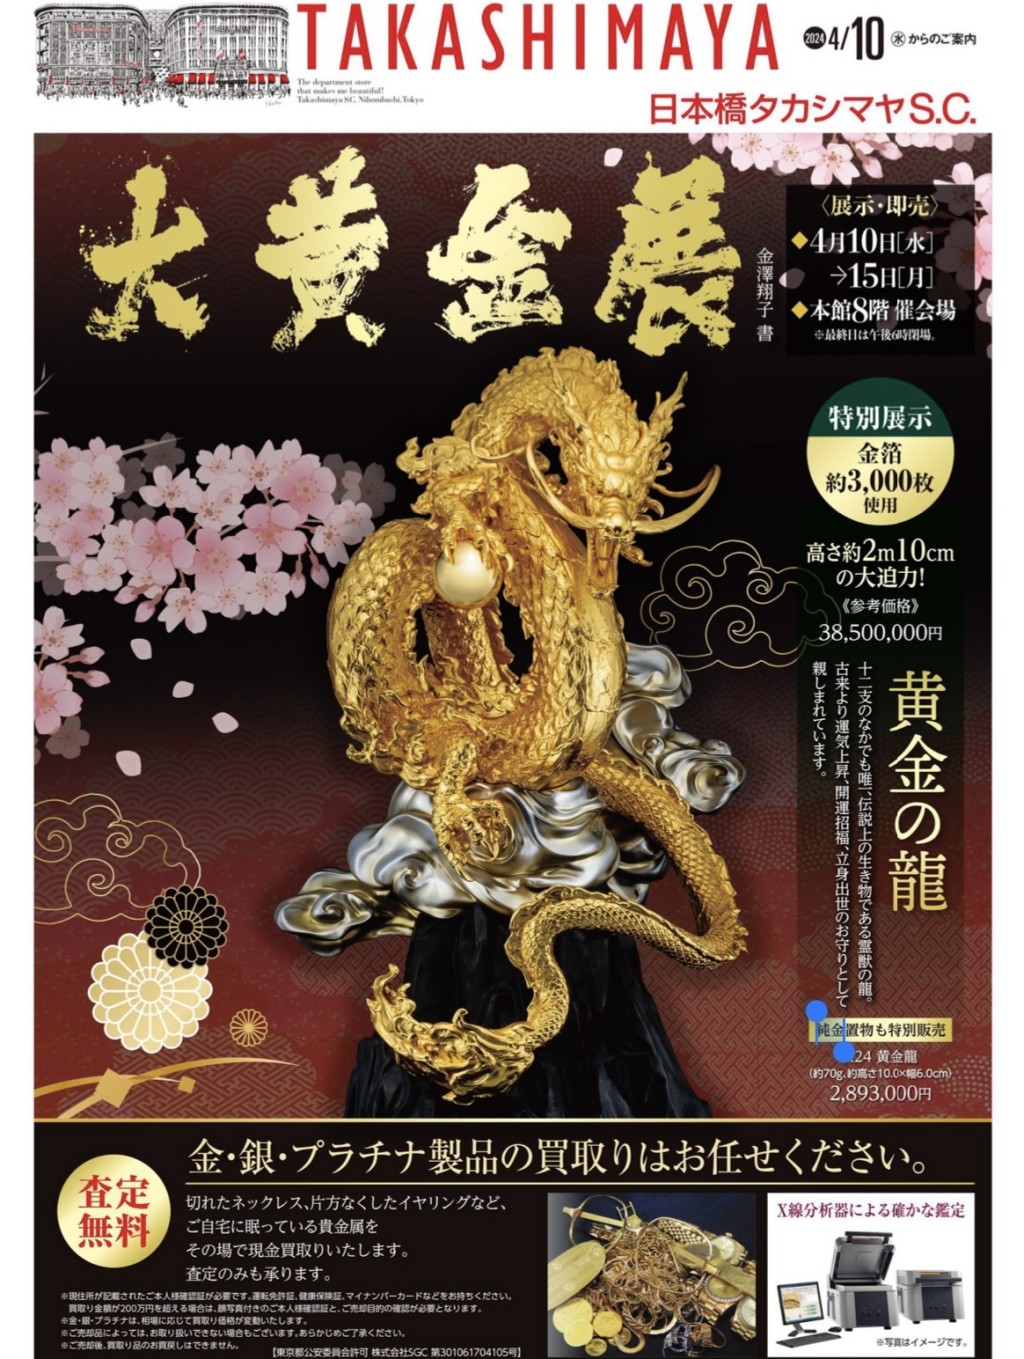 日本桥高岛屋“大黄金展”宣传刊物。 